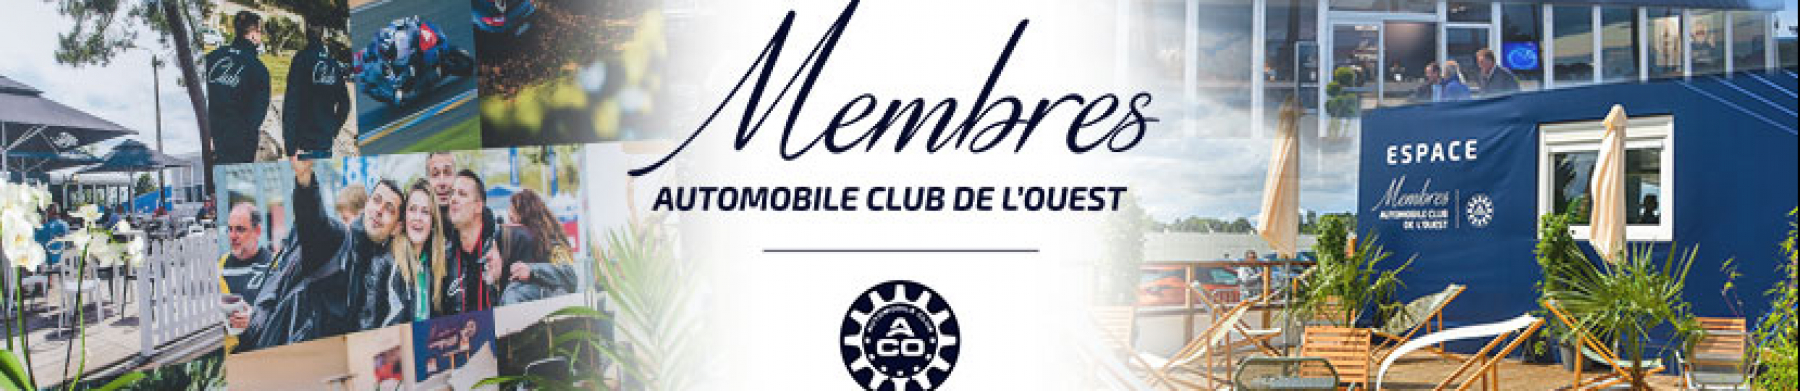 Bannière Automobile Club de l'Ouest